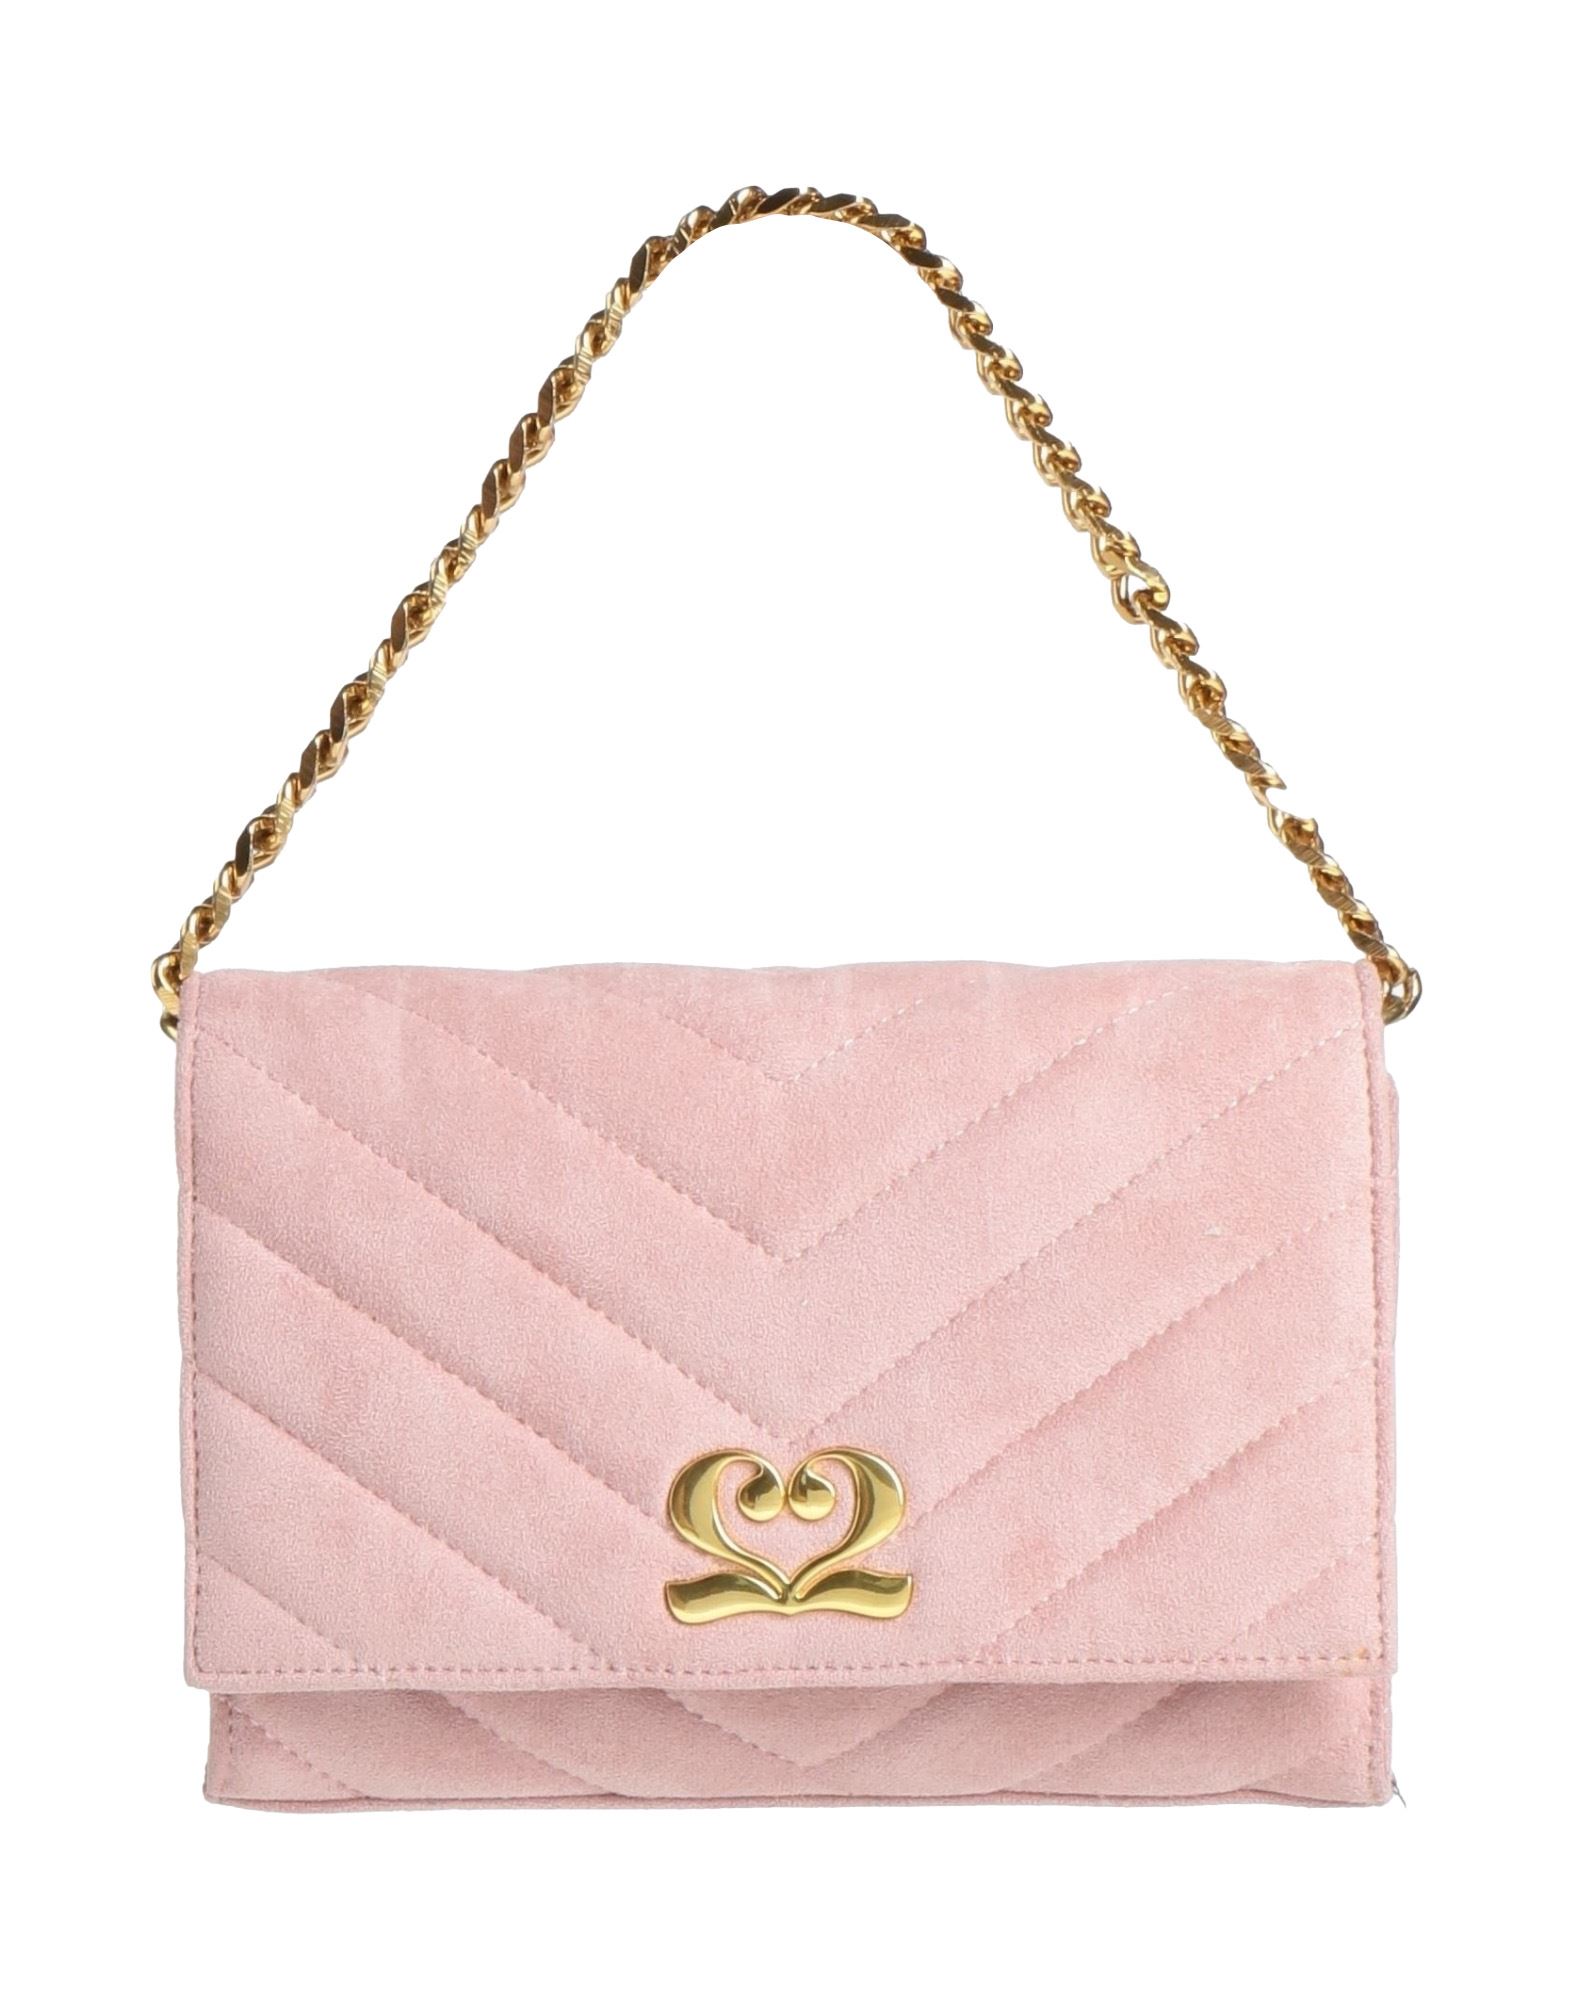 Numeroventidue Handbags In Pink